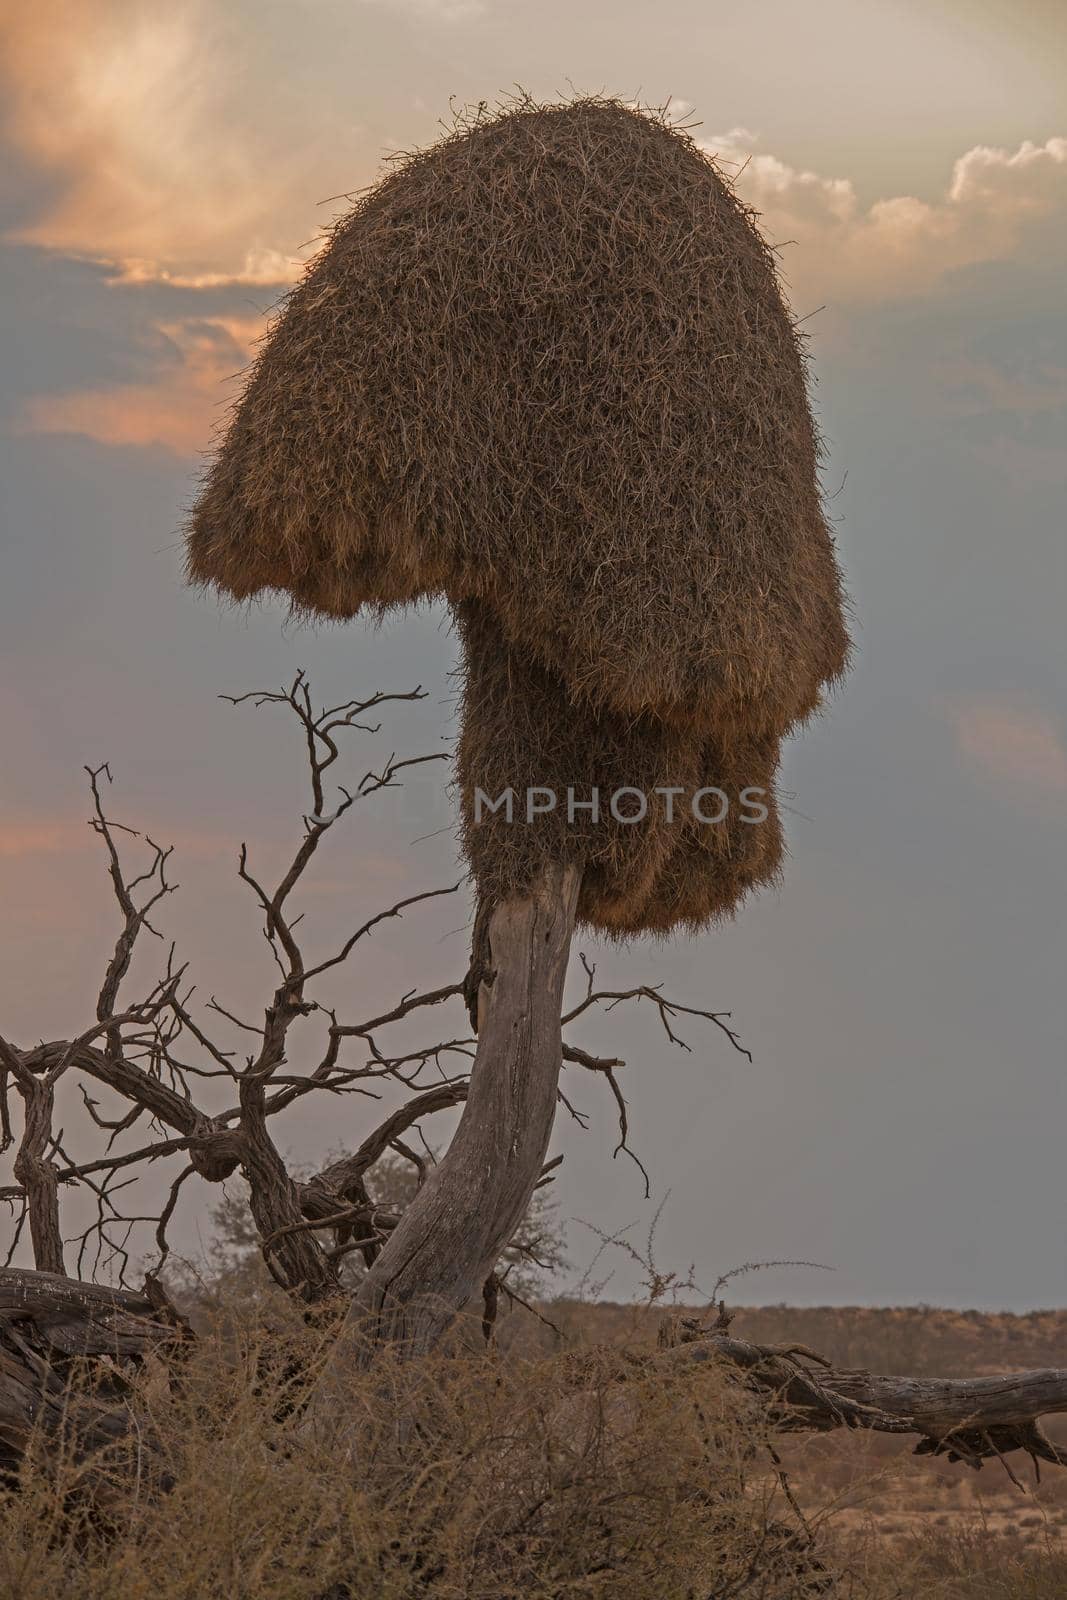 Nest of the Sociable Weaver 4879 by kobus_peche